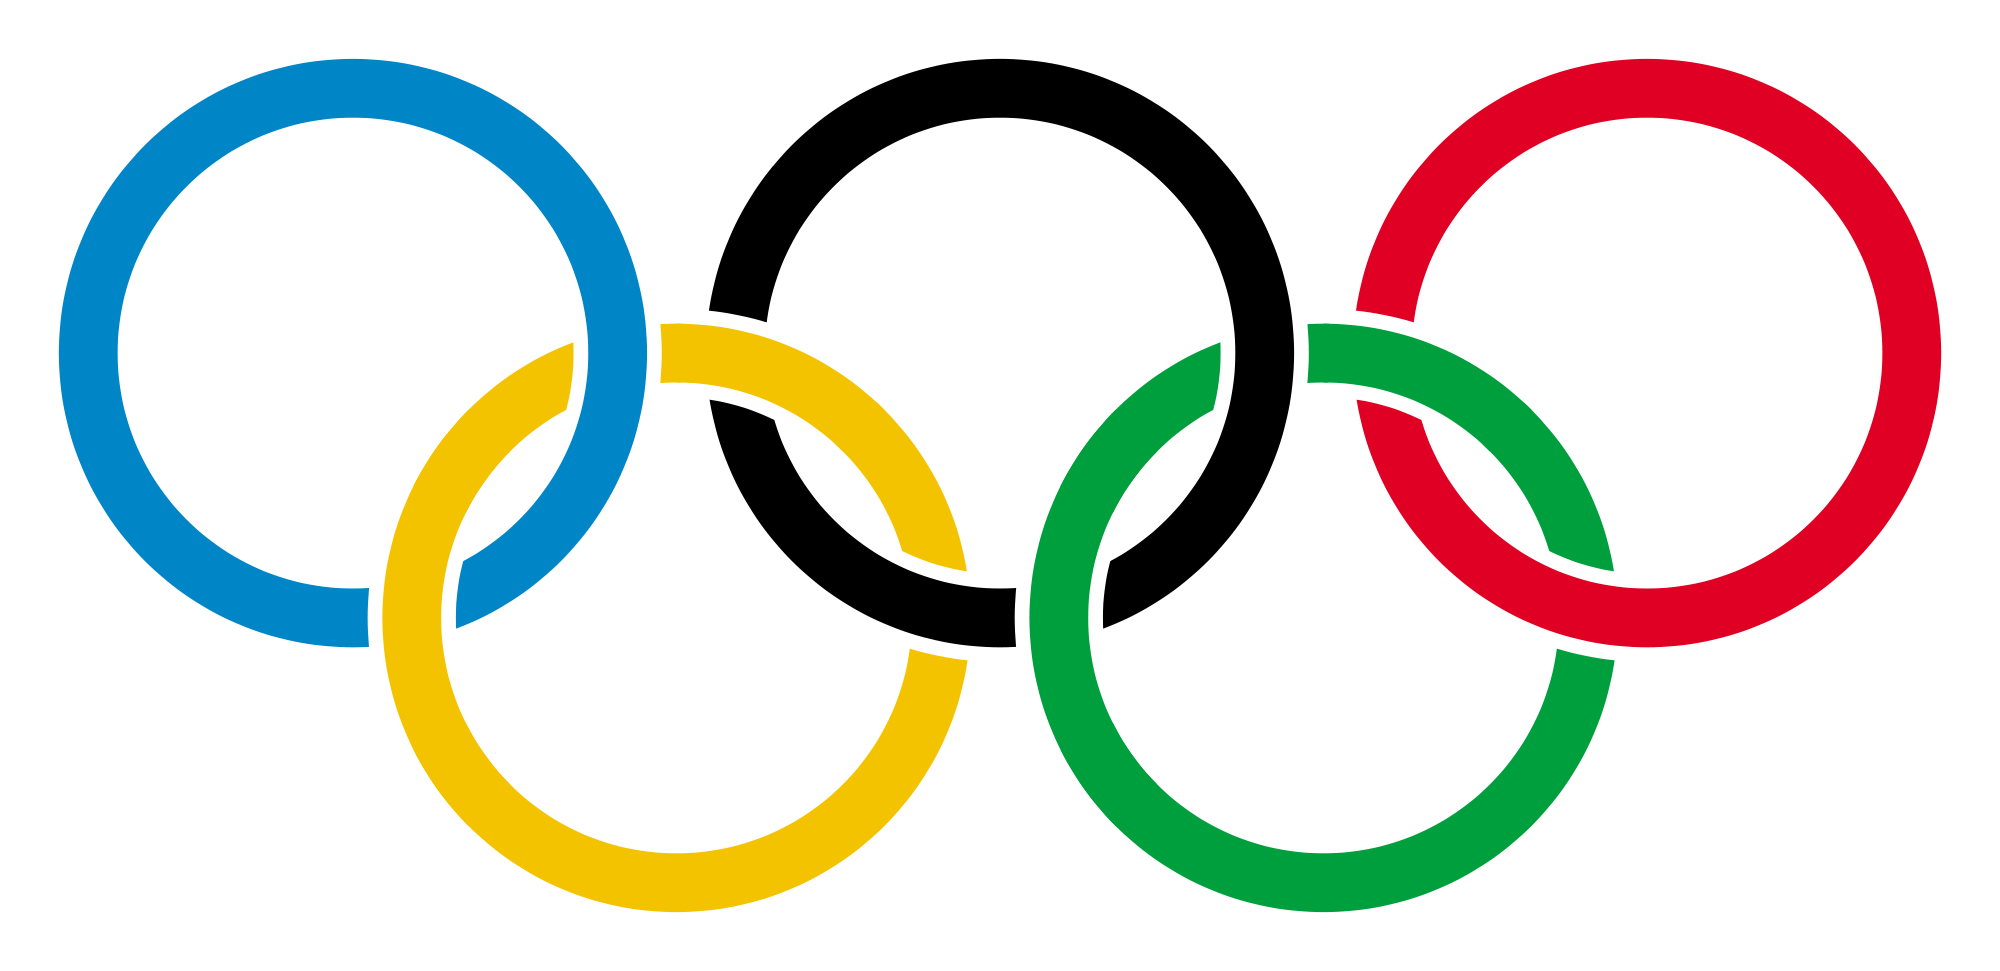 Олимпийские кольца PNG Picture